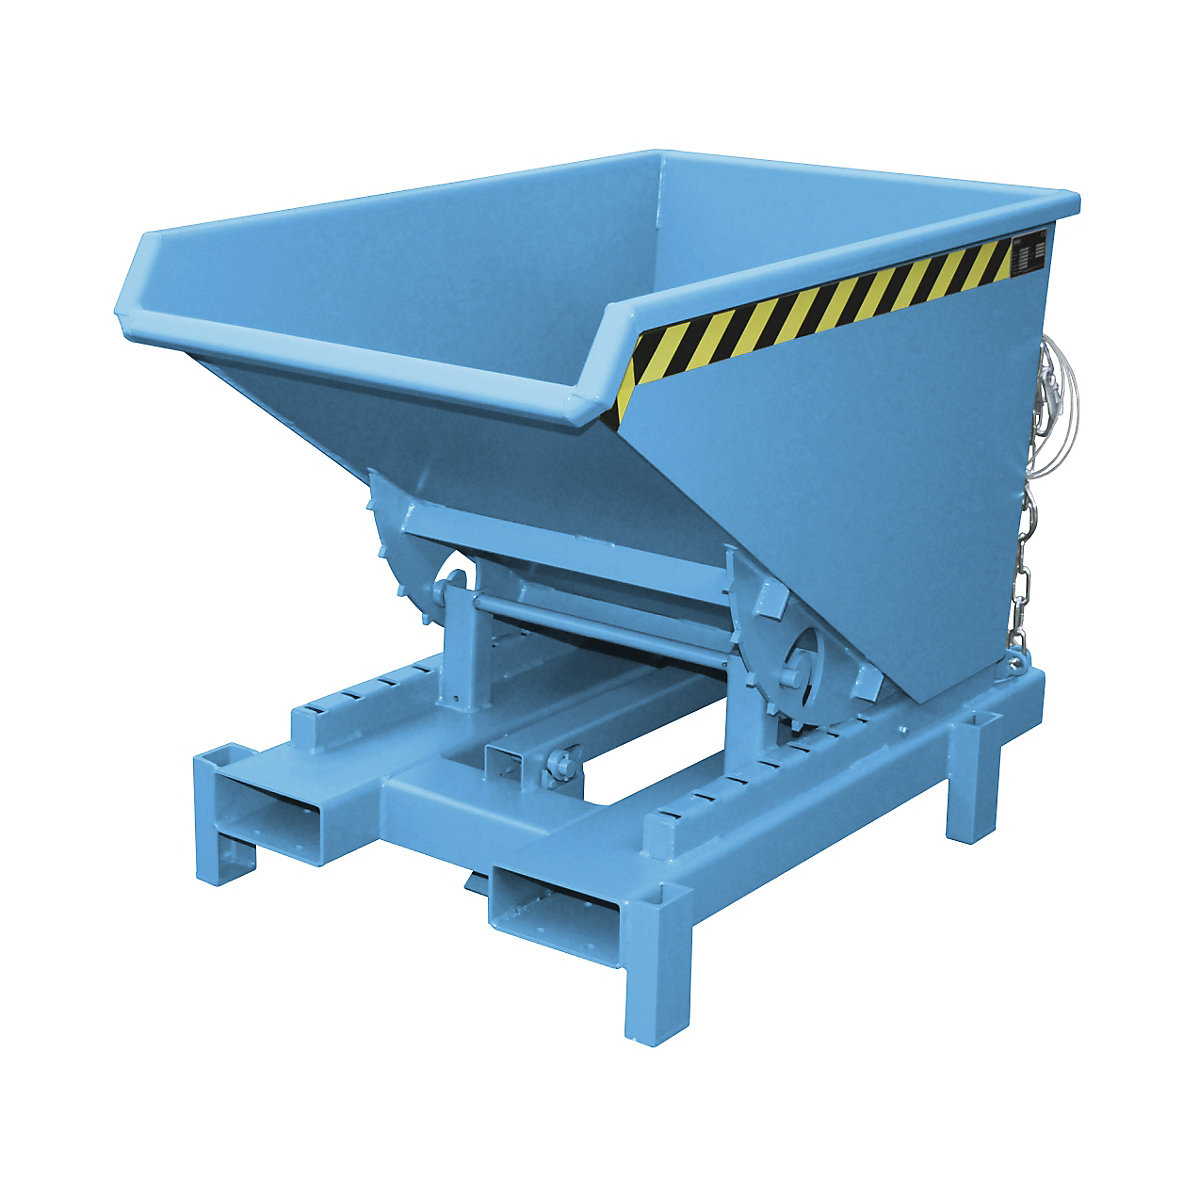 Benne basculante pour charges lourdes – eurokraft pro, capacité 0,3 m³, force 4000 kg, bleu RAL 5012-12